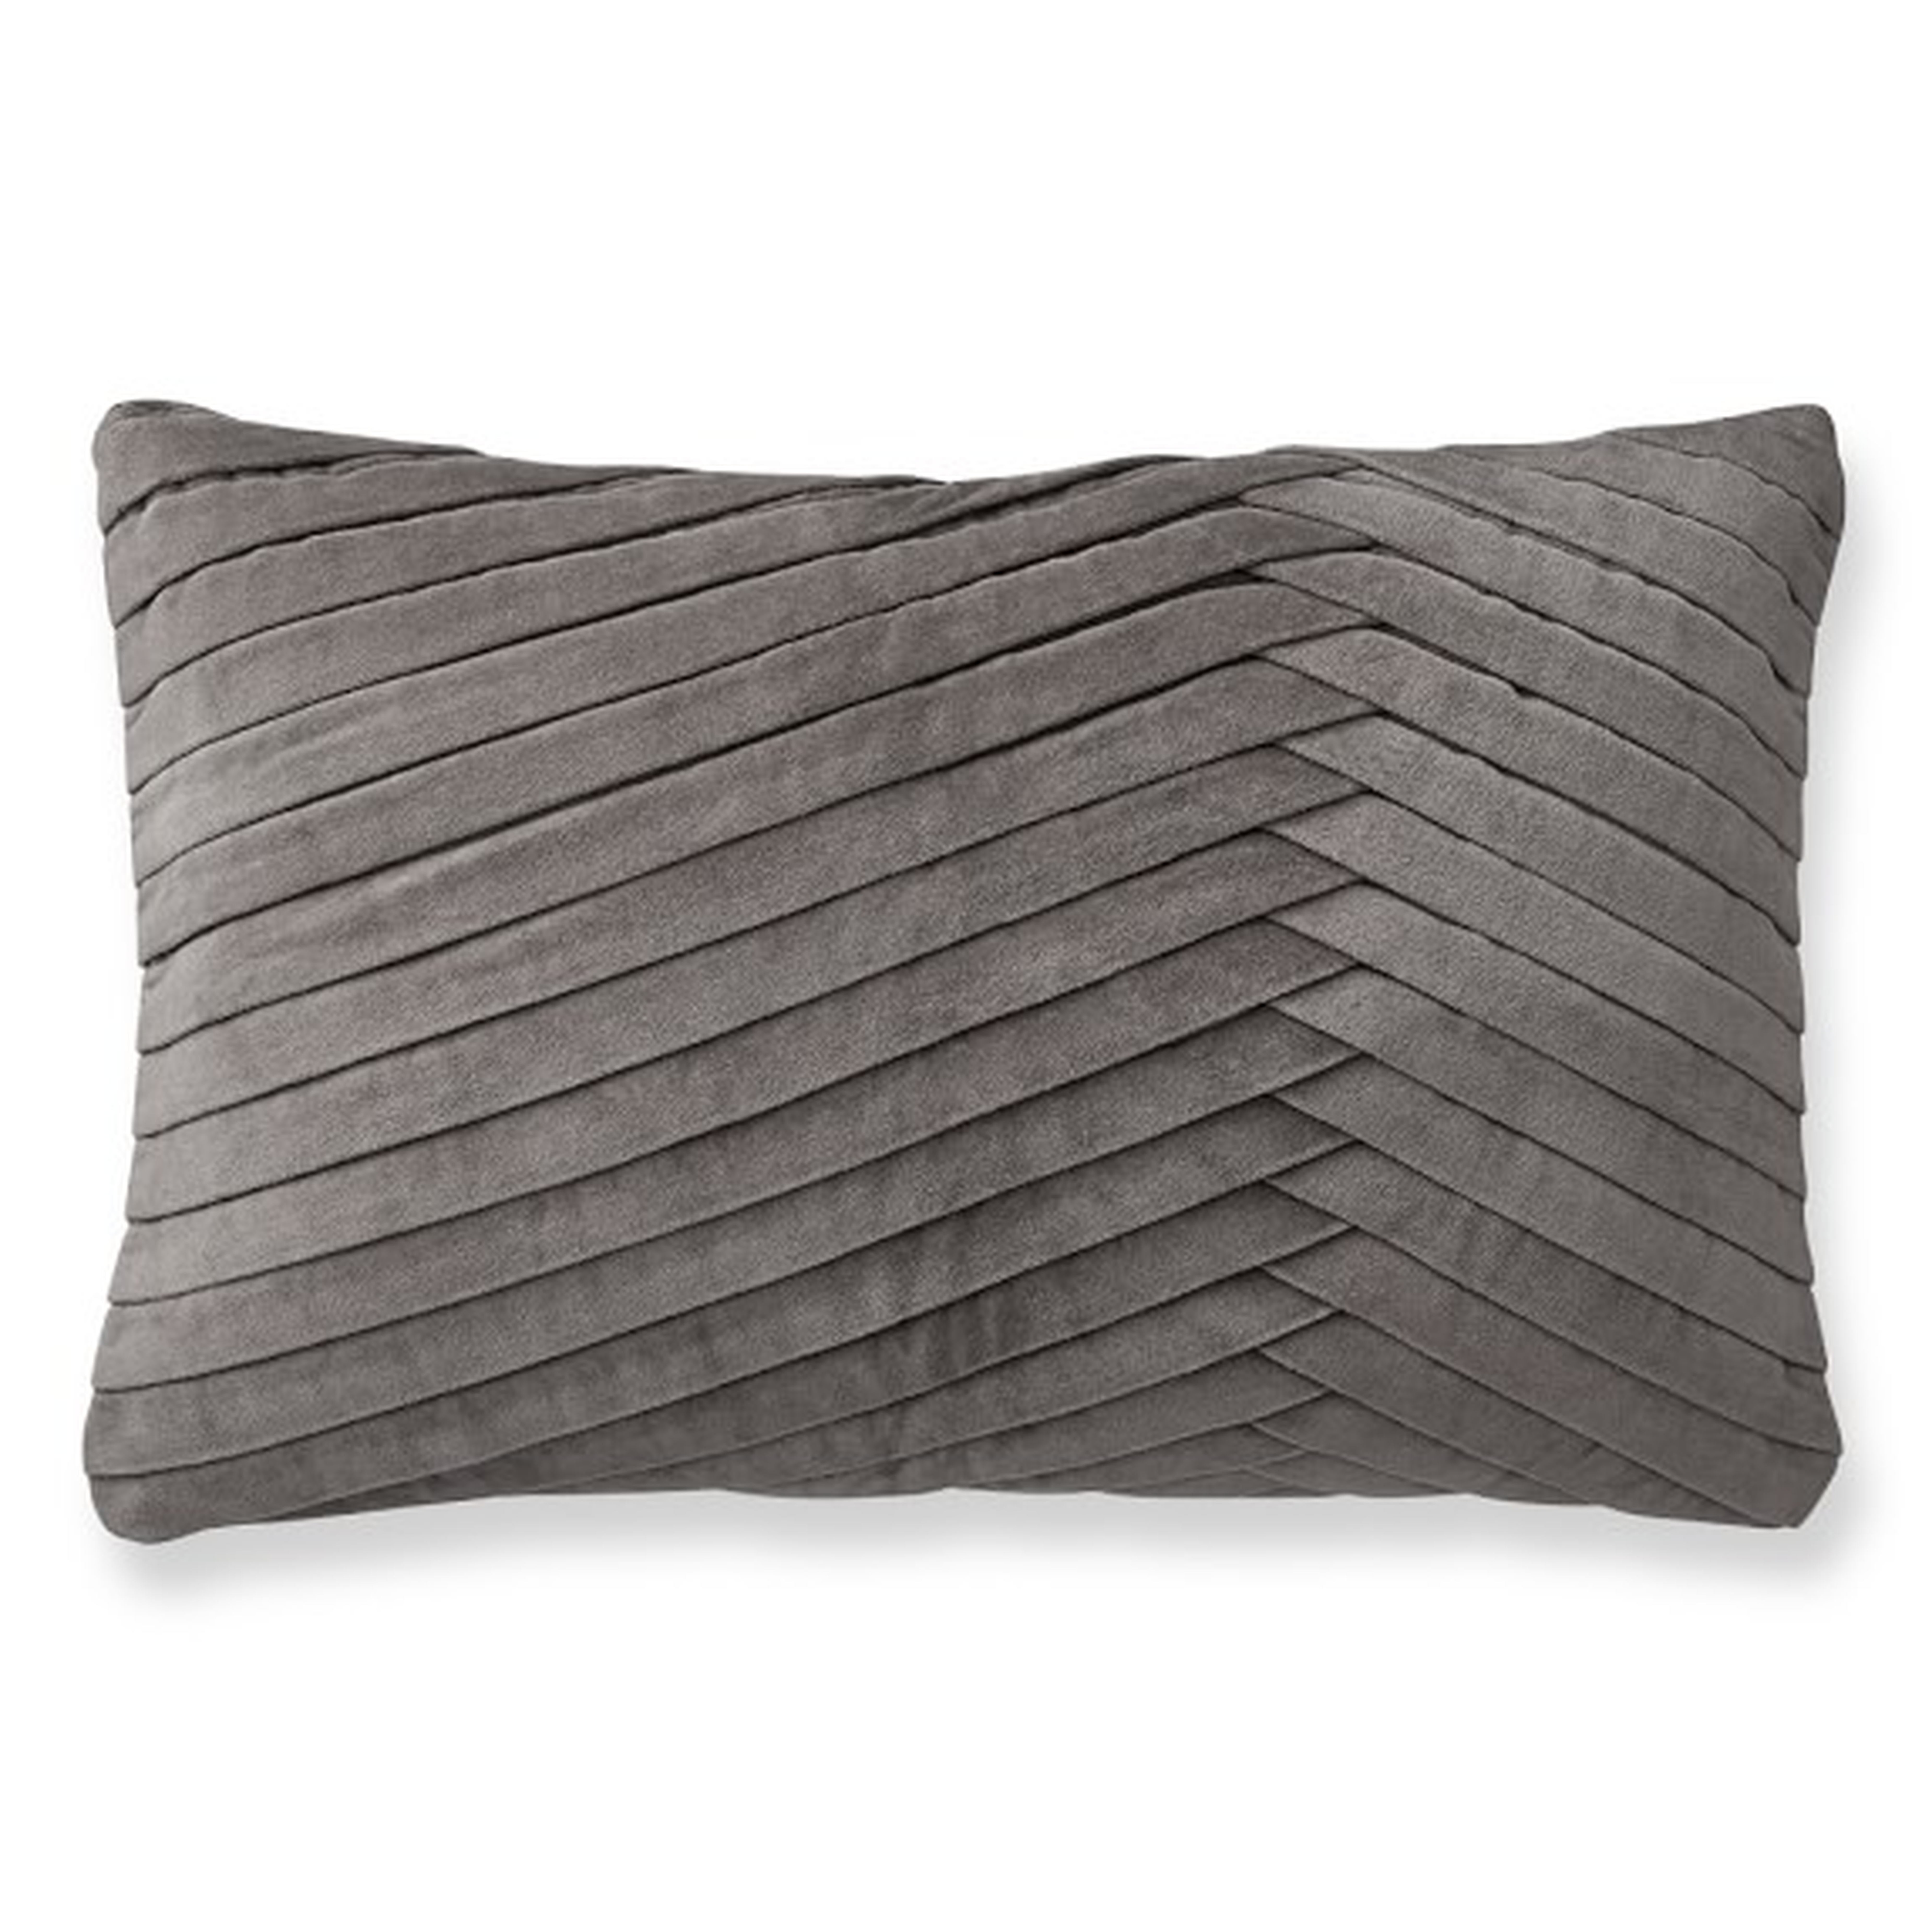 Pleated Velvet Lumbar Pillow Cover, Steeple Gray - Williams Sonoma